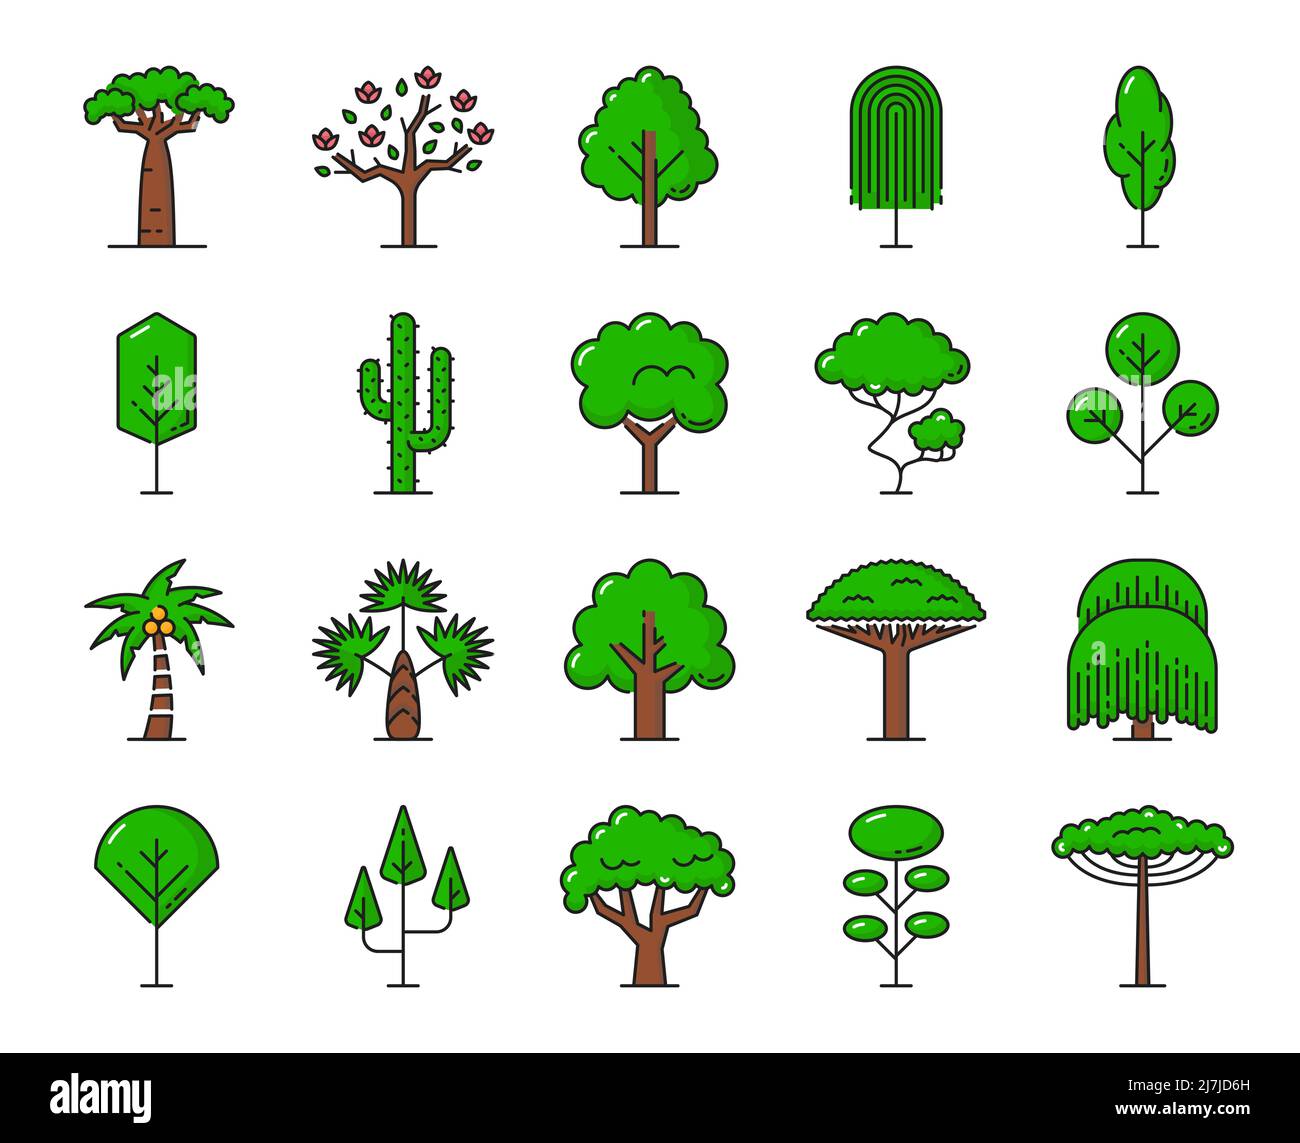 Grüne tropische Bäume Ikonen. Strand-, Dschungelwald- und Parkbäume isolierte Vektorsymbole. Palmengarten mit Eiche, Baobab und Kiefer oder Kaktus, yucca aus dem afrikanischen Regenwald und exotischer Kokospalme Stock Vektor